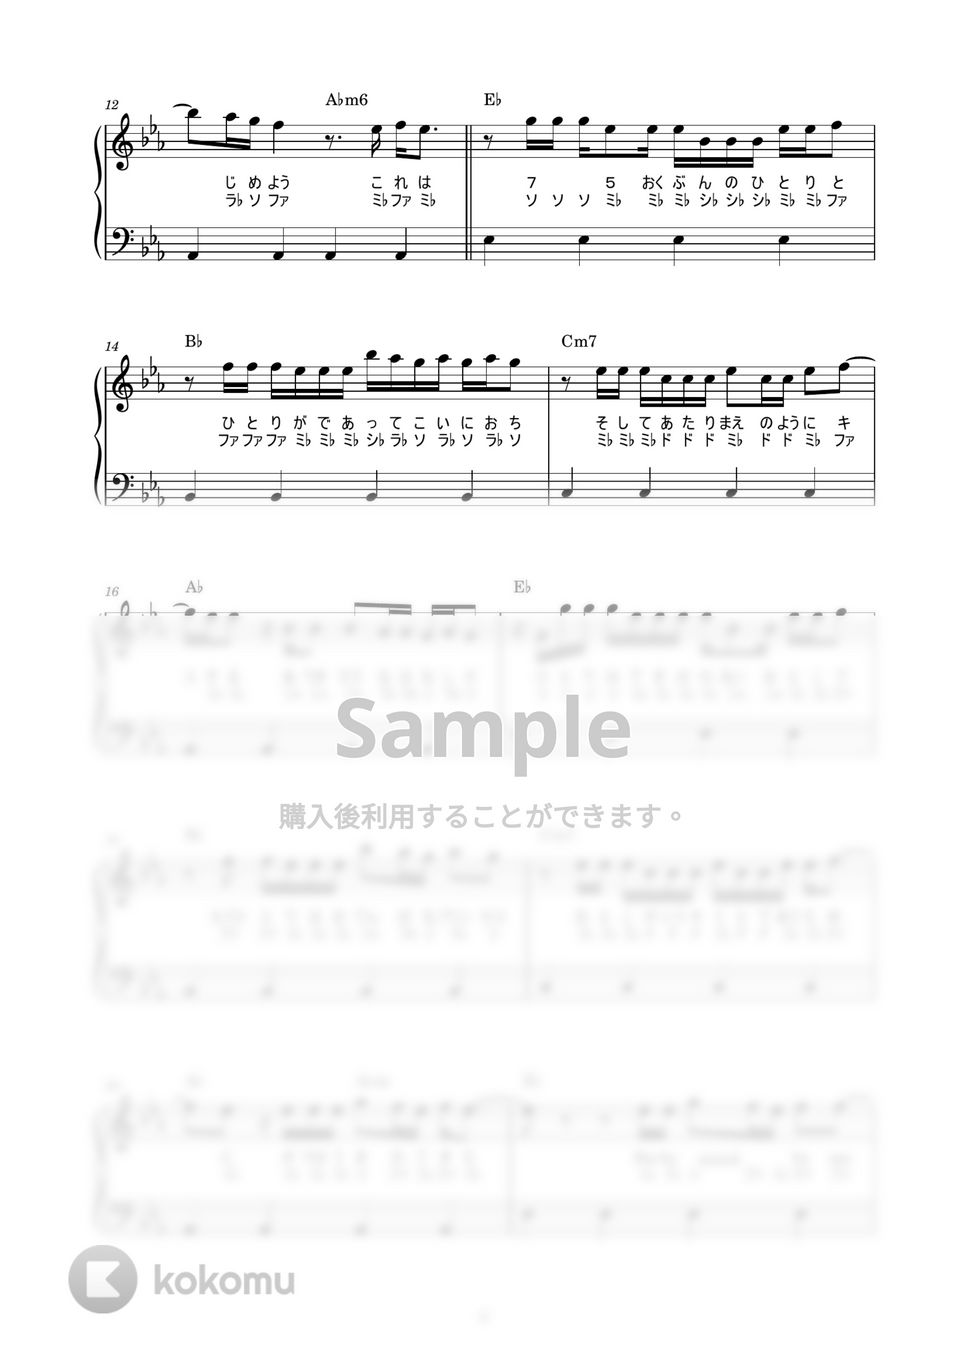 平井 大 - Stand by me, Stand by you. (かんたん / 歌詞付き / ドレミ付き / 初心者) by piano.tokyo